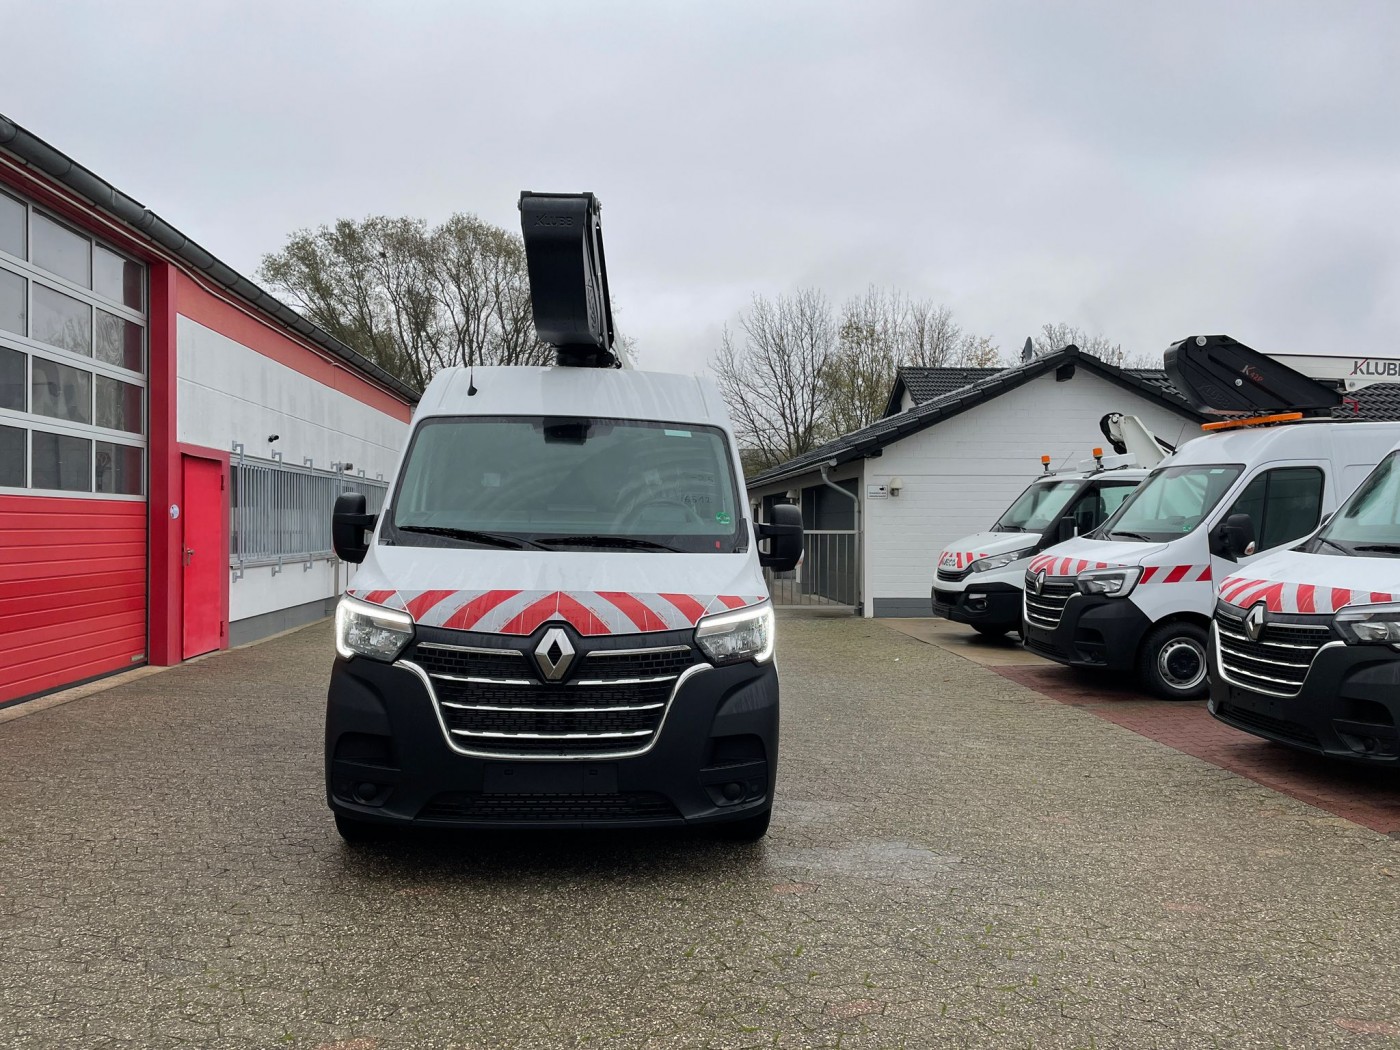 Renault - Master 145dCi van aerial work lift KLUBB K32 13m new vehicle